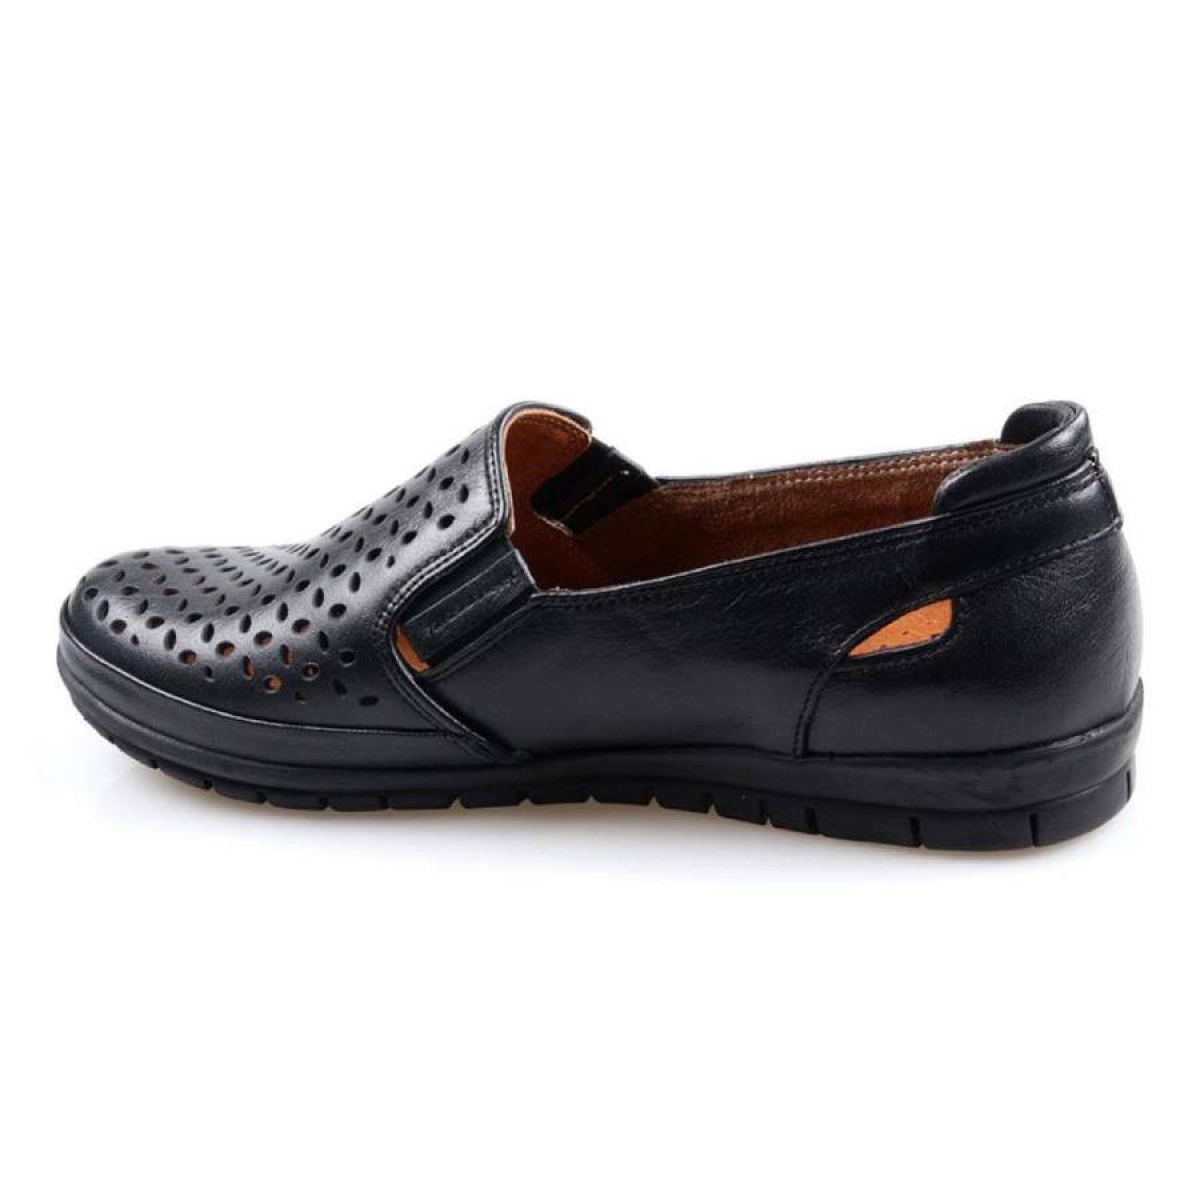 Flo Scavia Comfort Siyah Hakiki Deri Yazlık Kadın Ayakkabı. 3